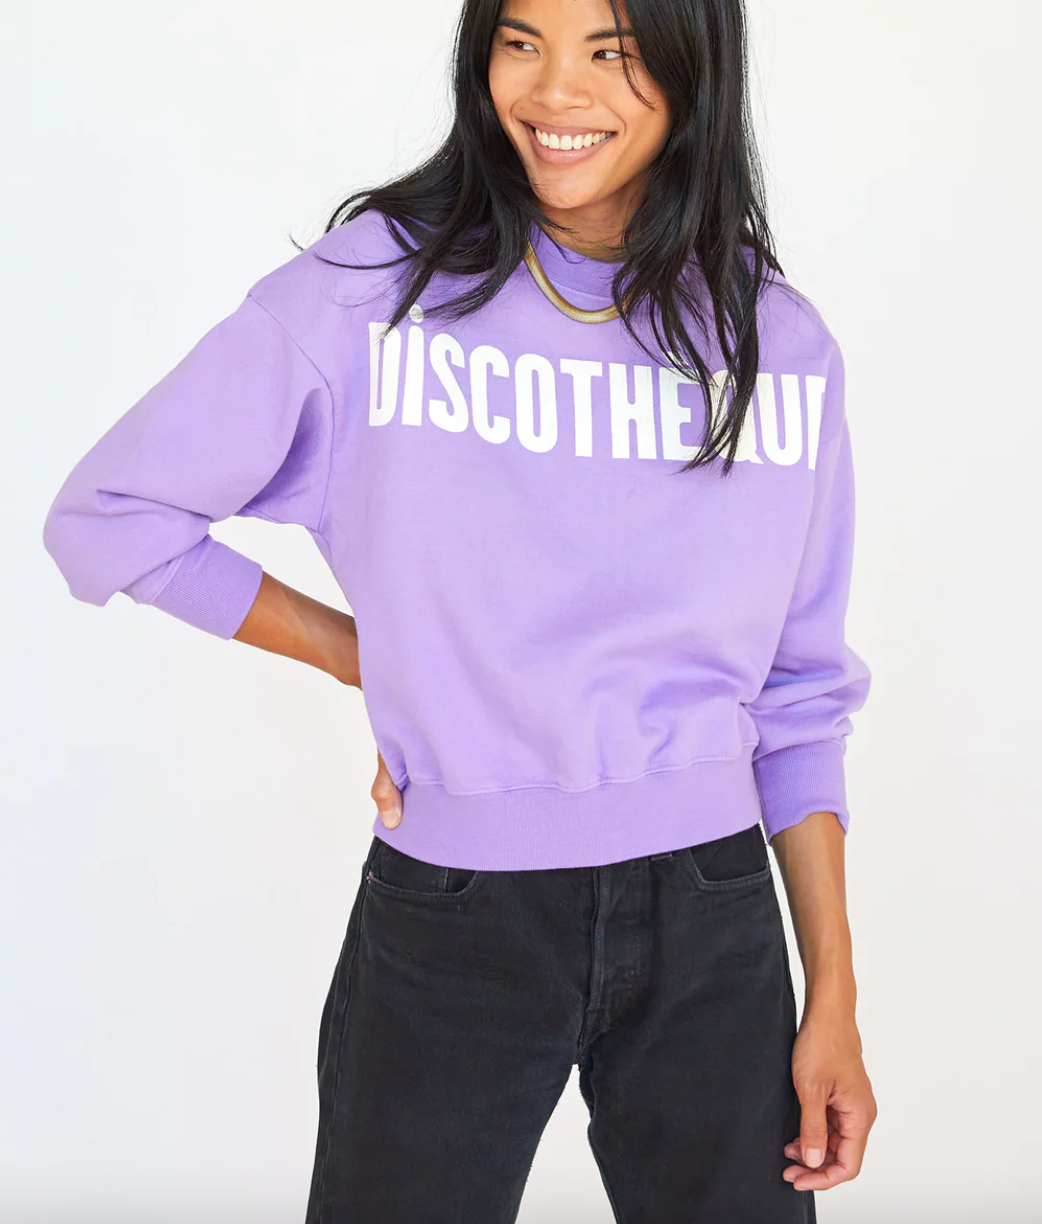 Le drop sweatshirt jacaranda discotheque